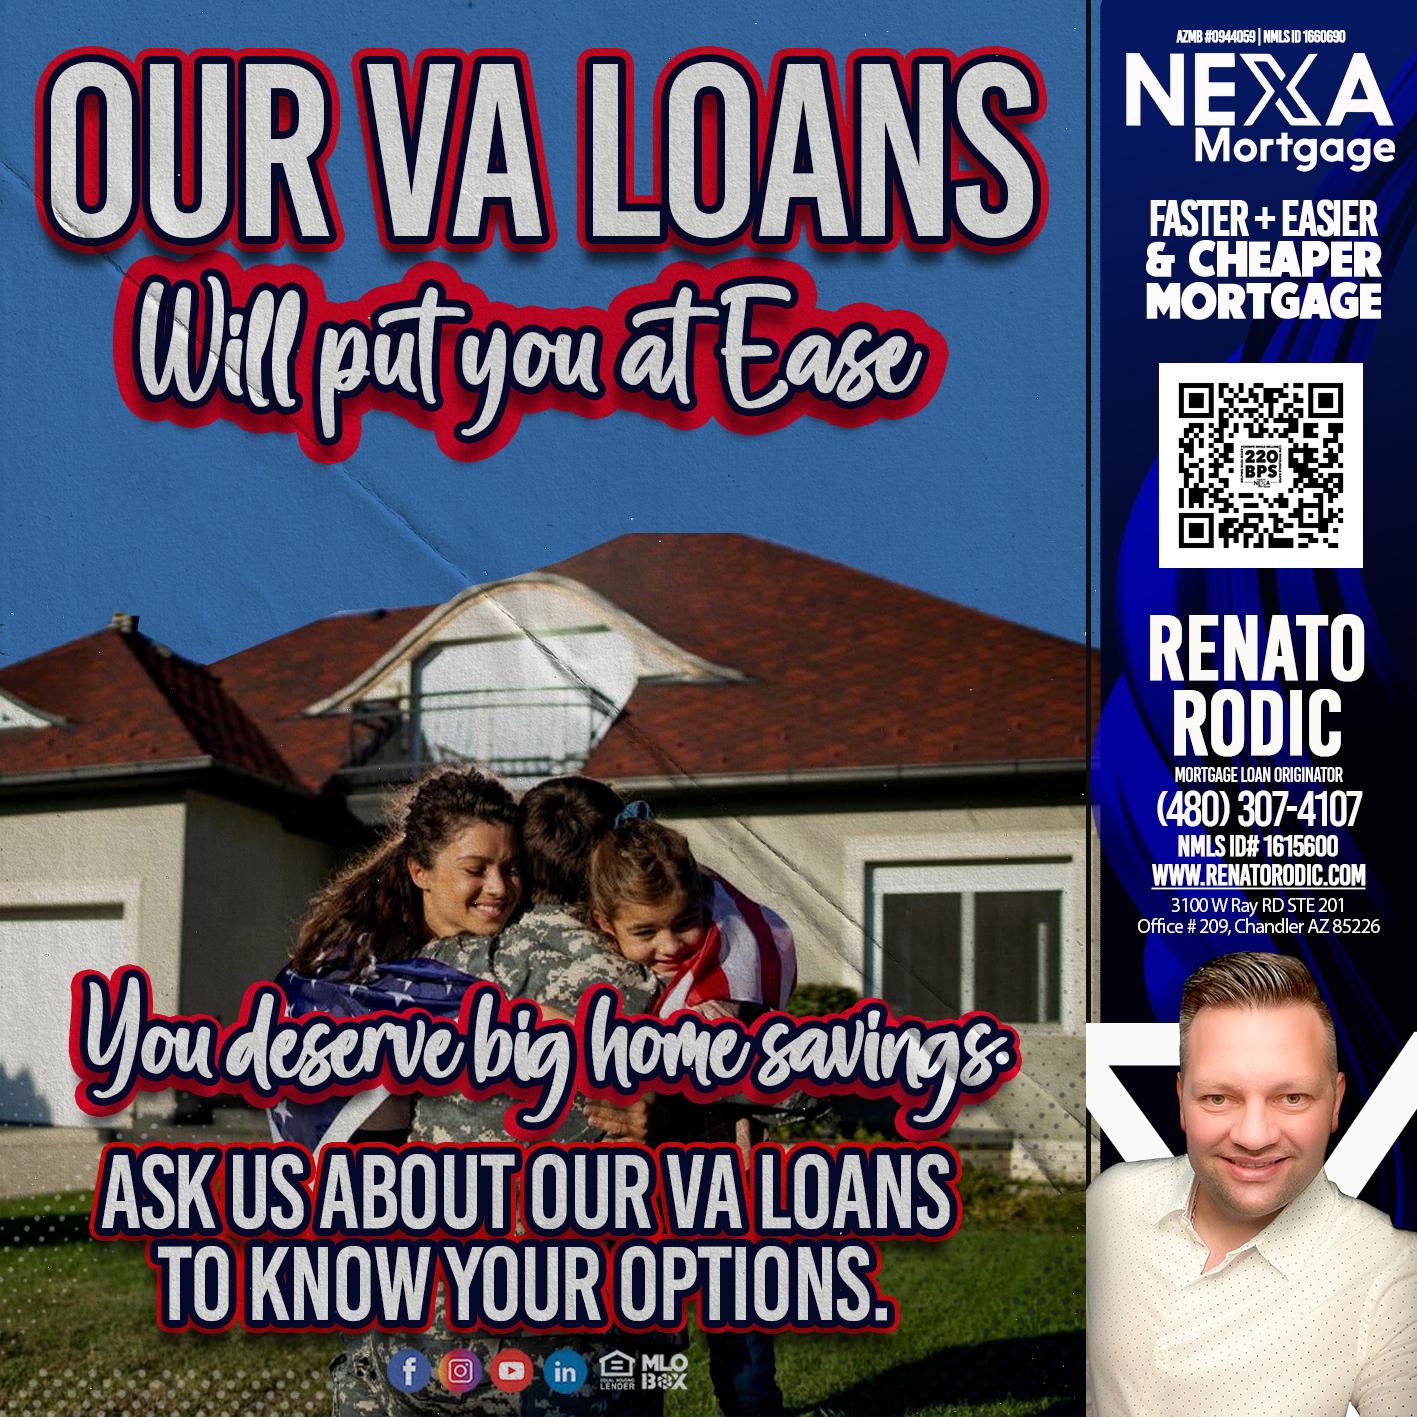 OUR VA LOANS - Renato Rodic -Mortgage Loan Originator